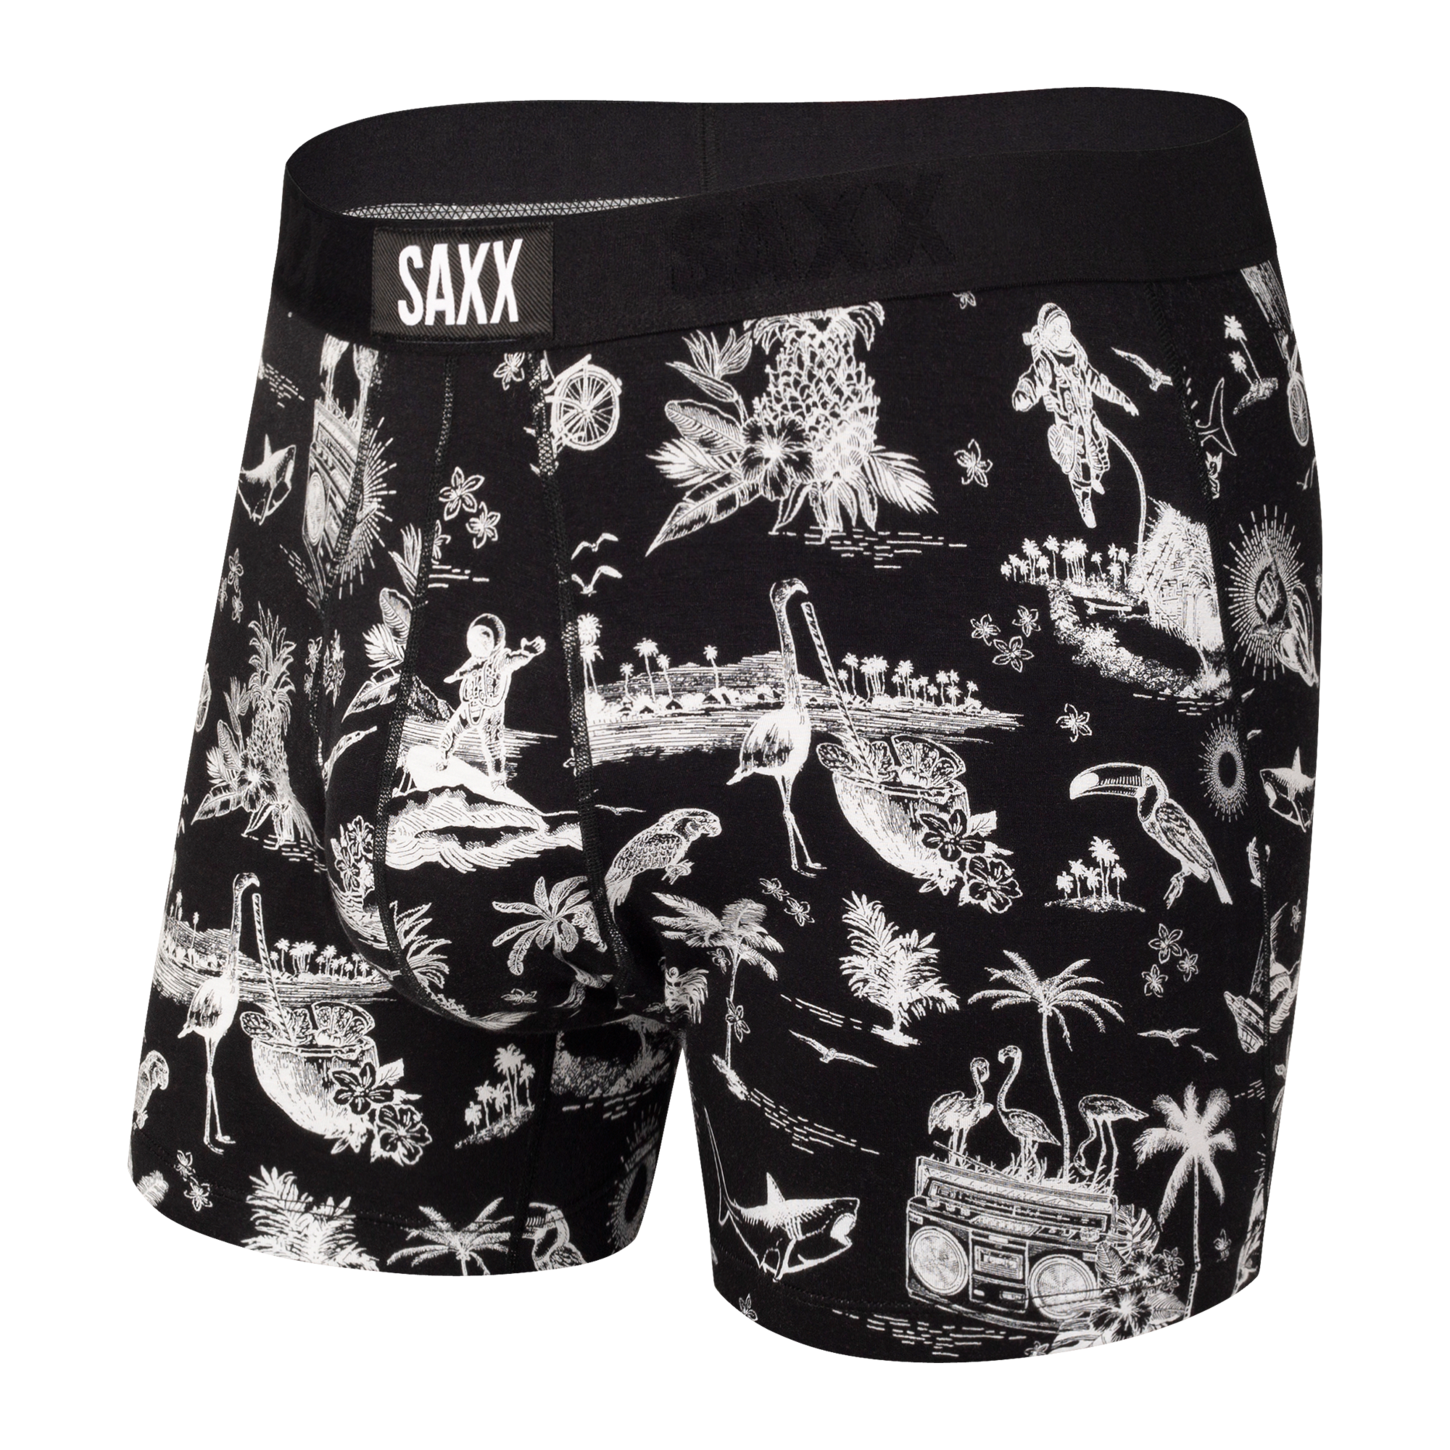 Saxx Underwear Co. Shark Tank Boxer Brief Daytripper in Blue for